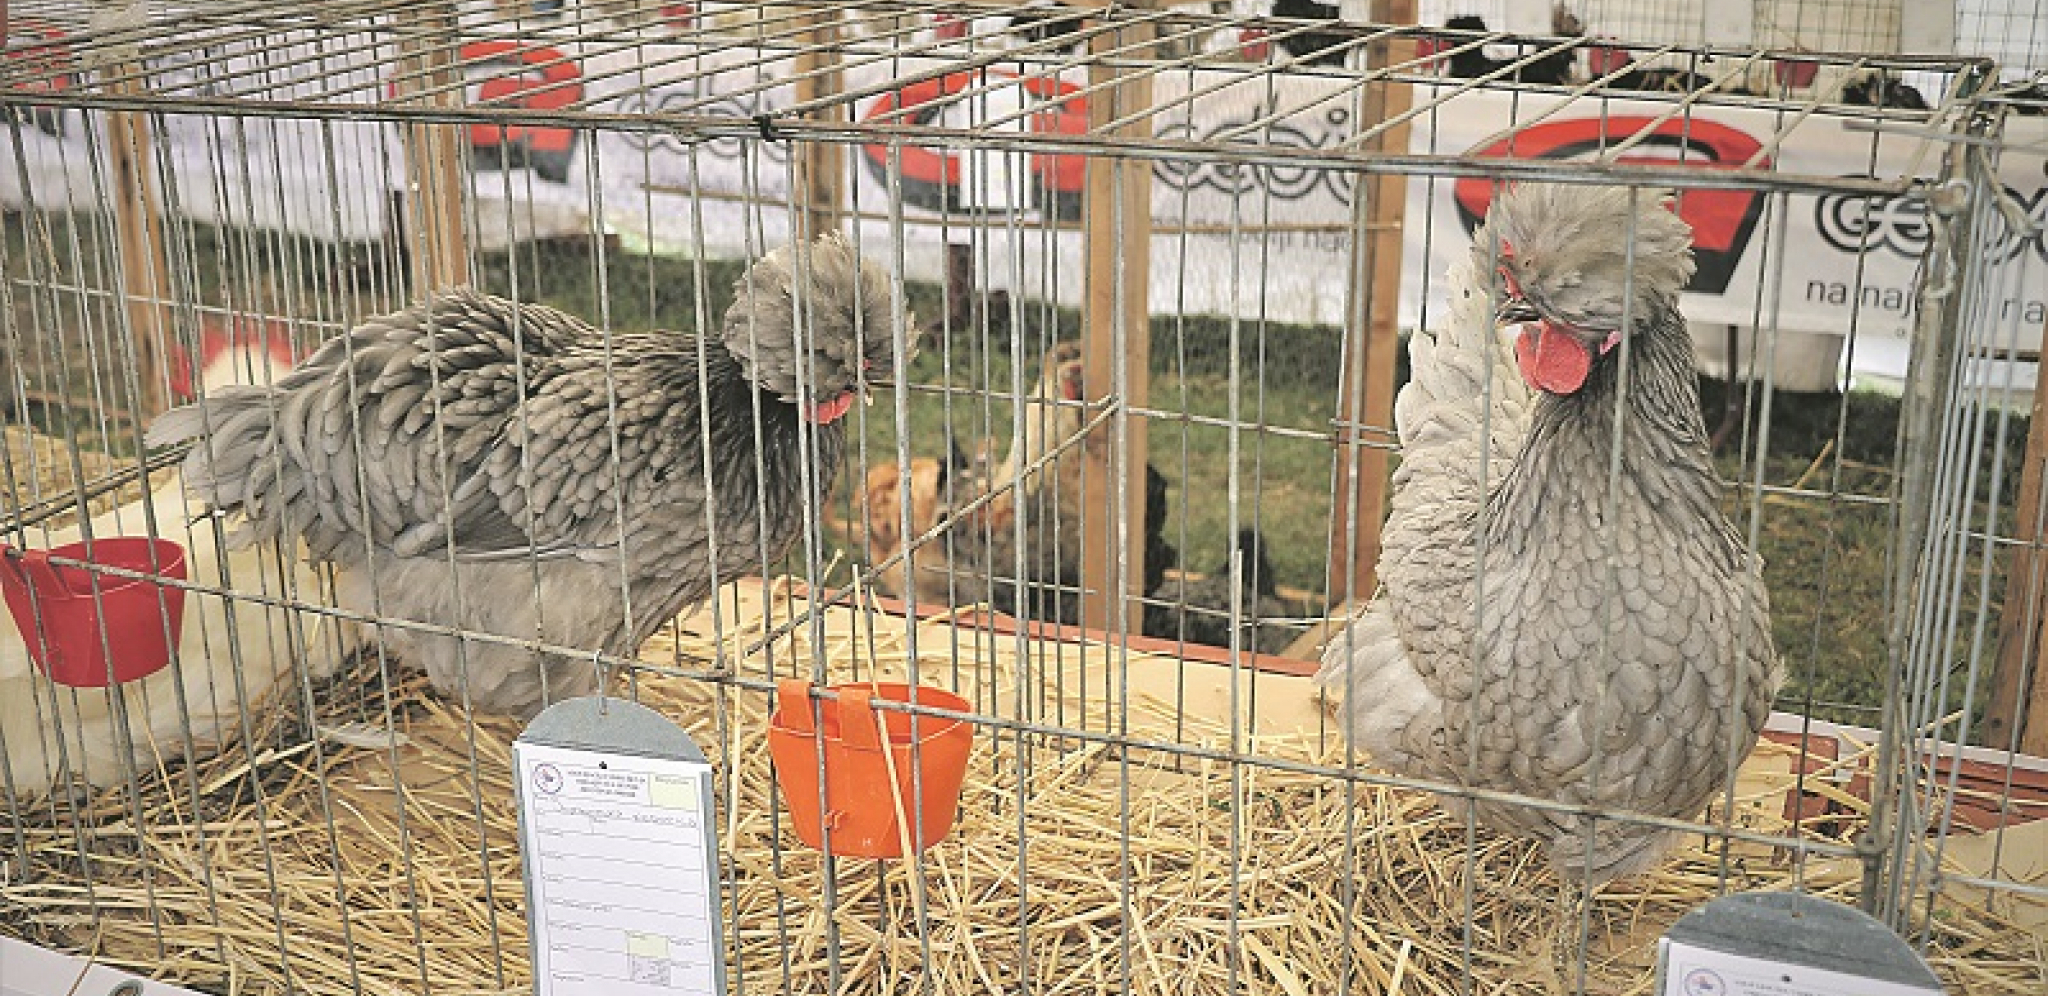 VEOMA INTERESANTNO Somborska kaporka pre svega osvaja uzgajivače ukrasne živine